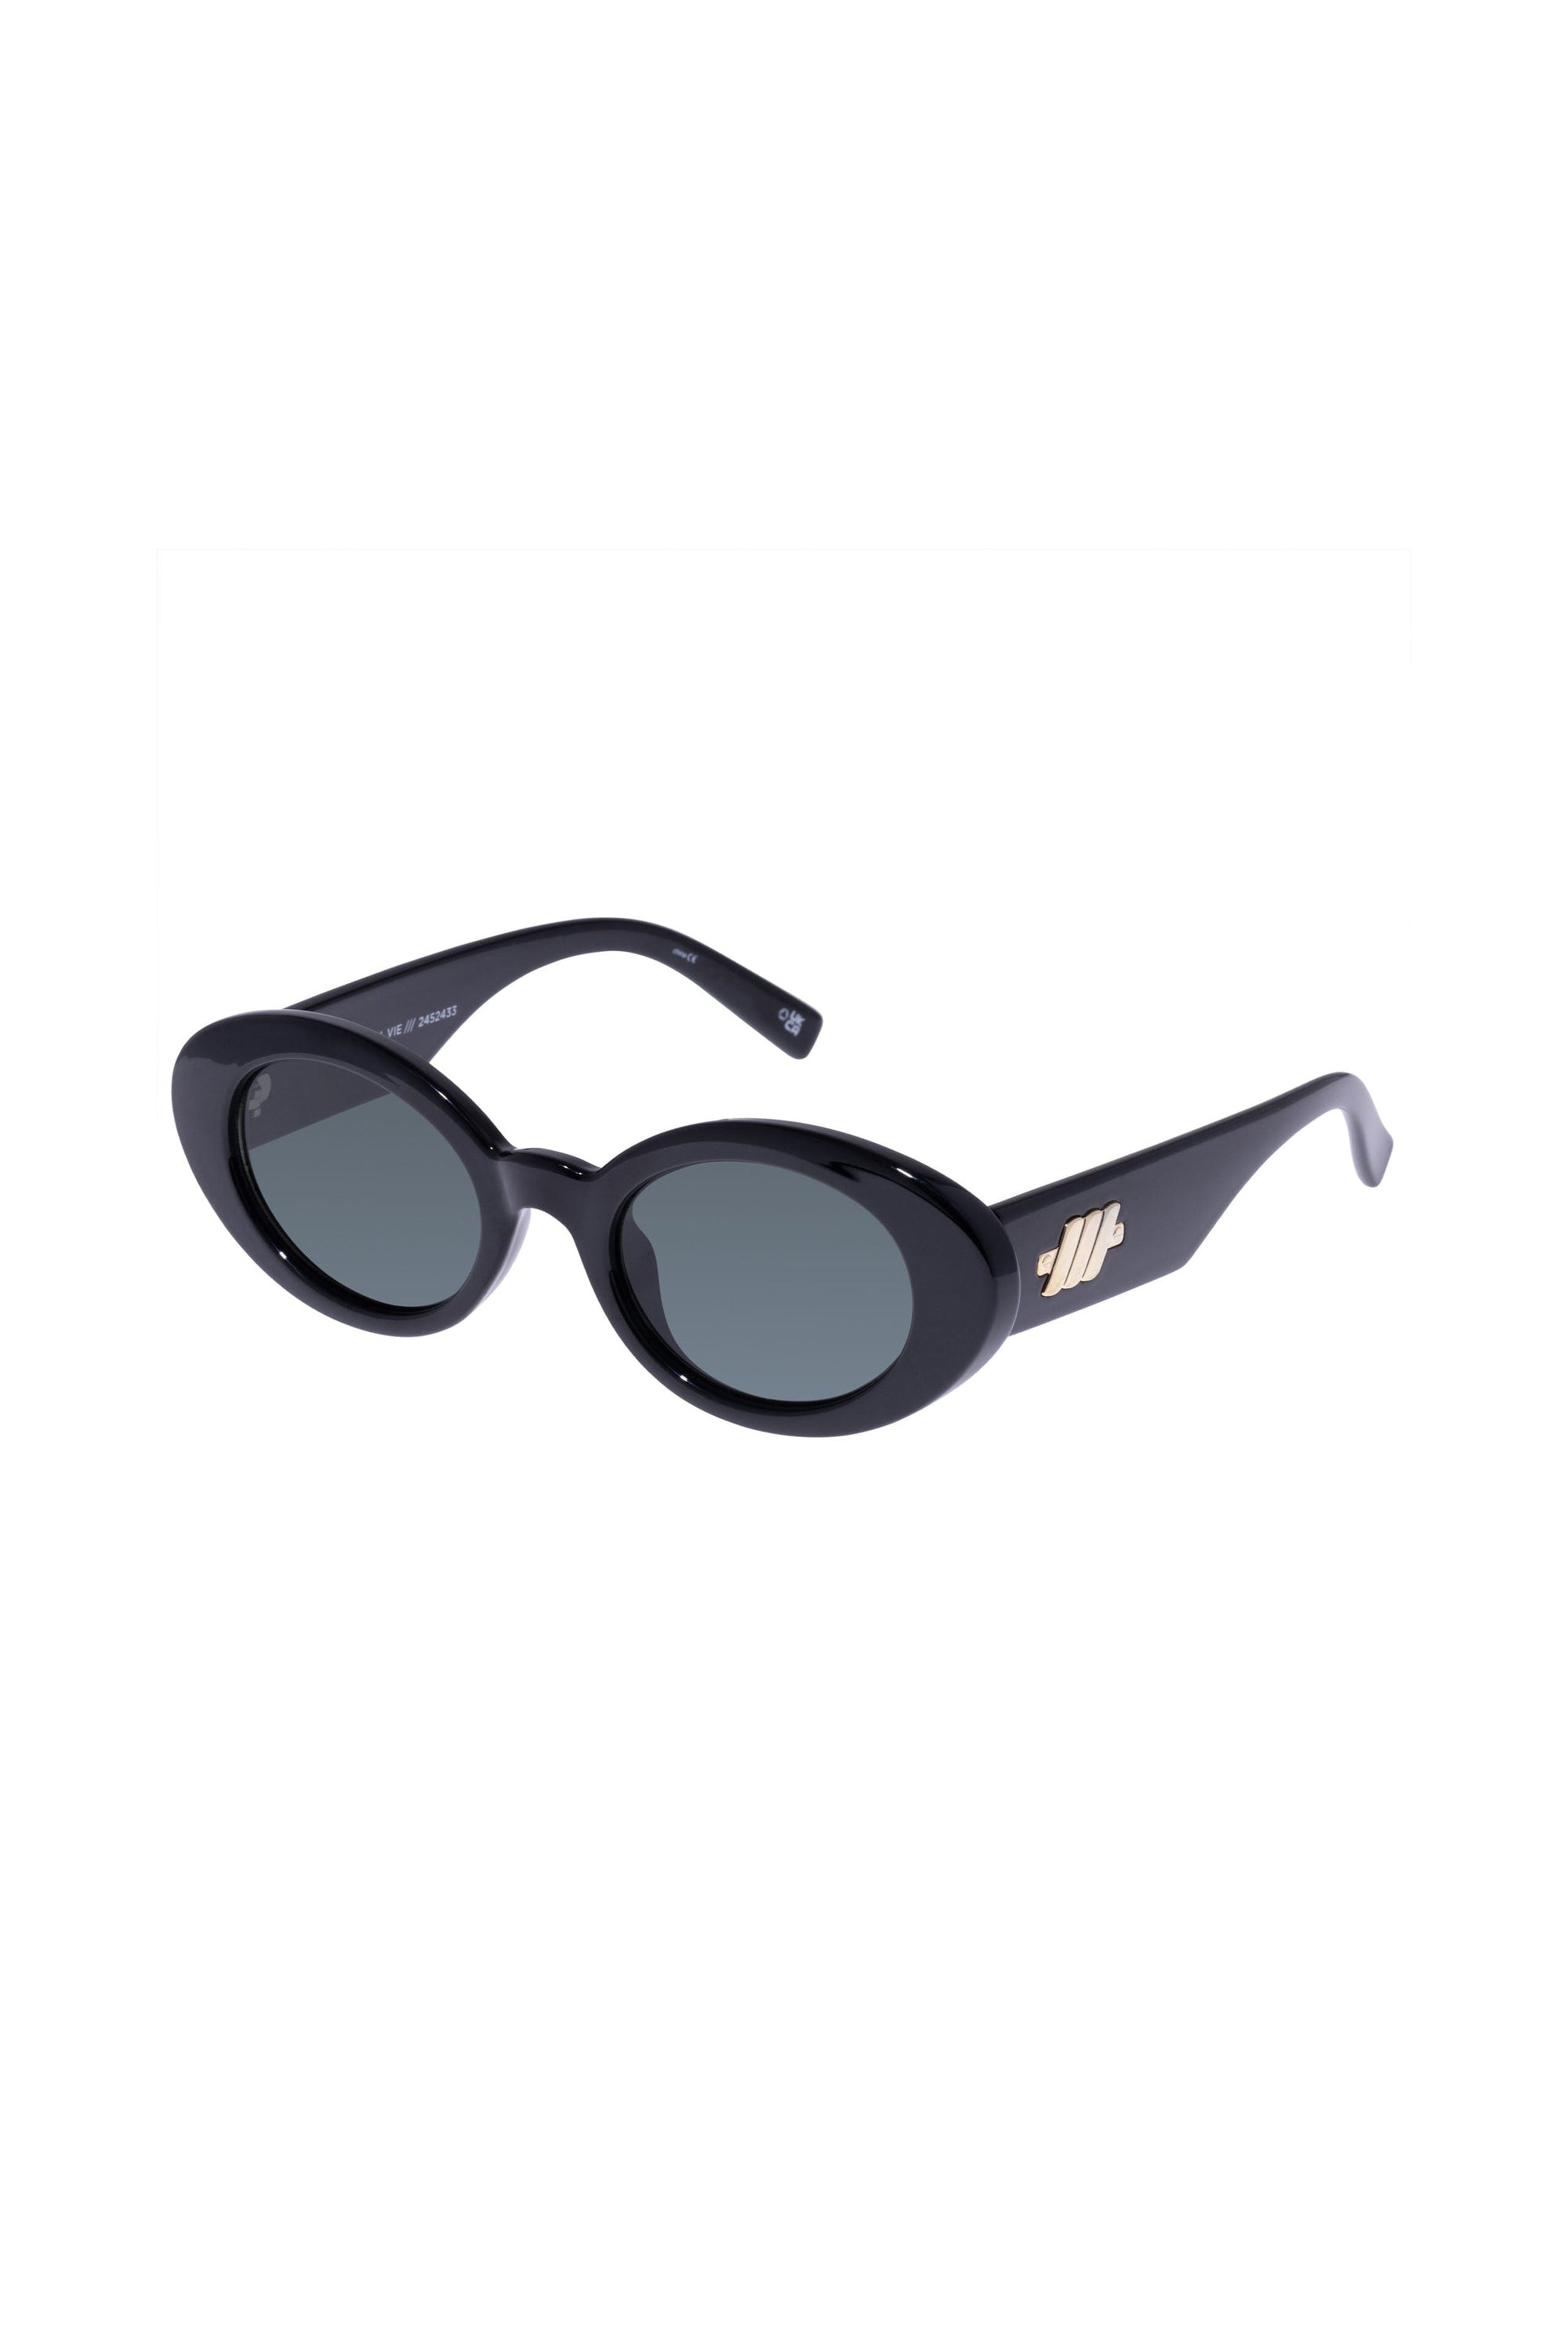 Le Specs Nouveau Vie Sunglasses - Black - RUM Amsterdam